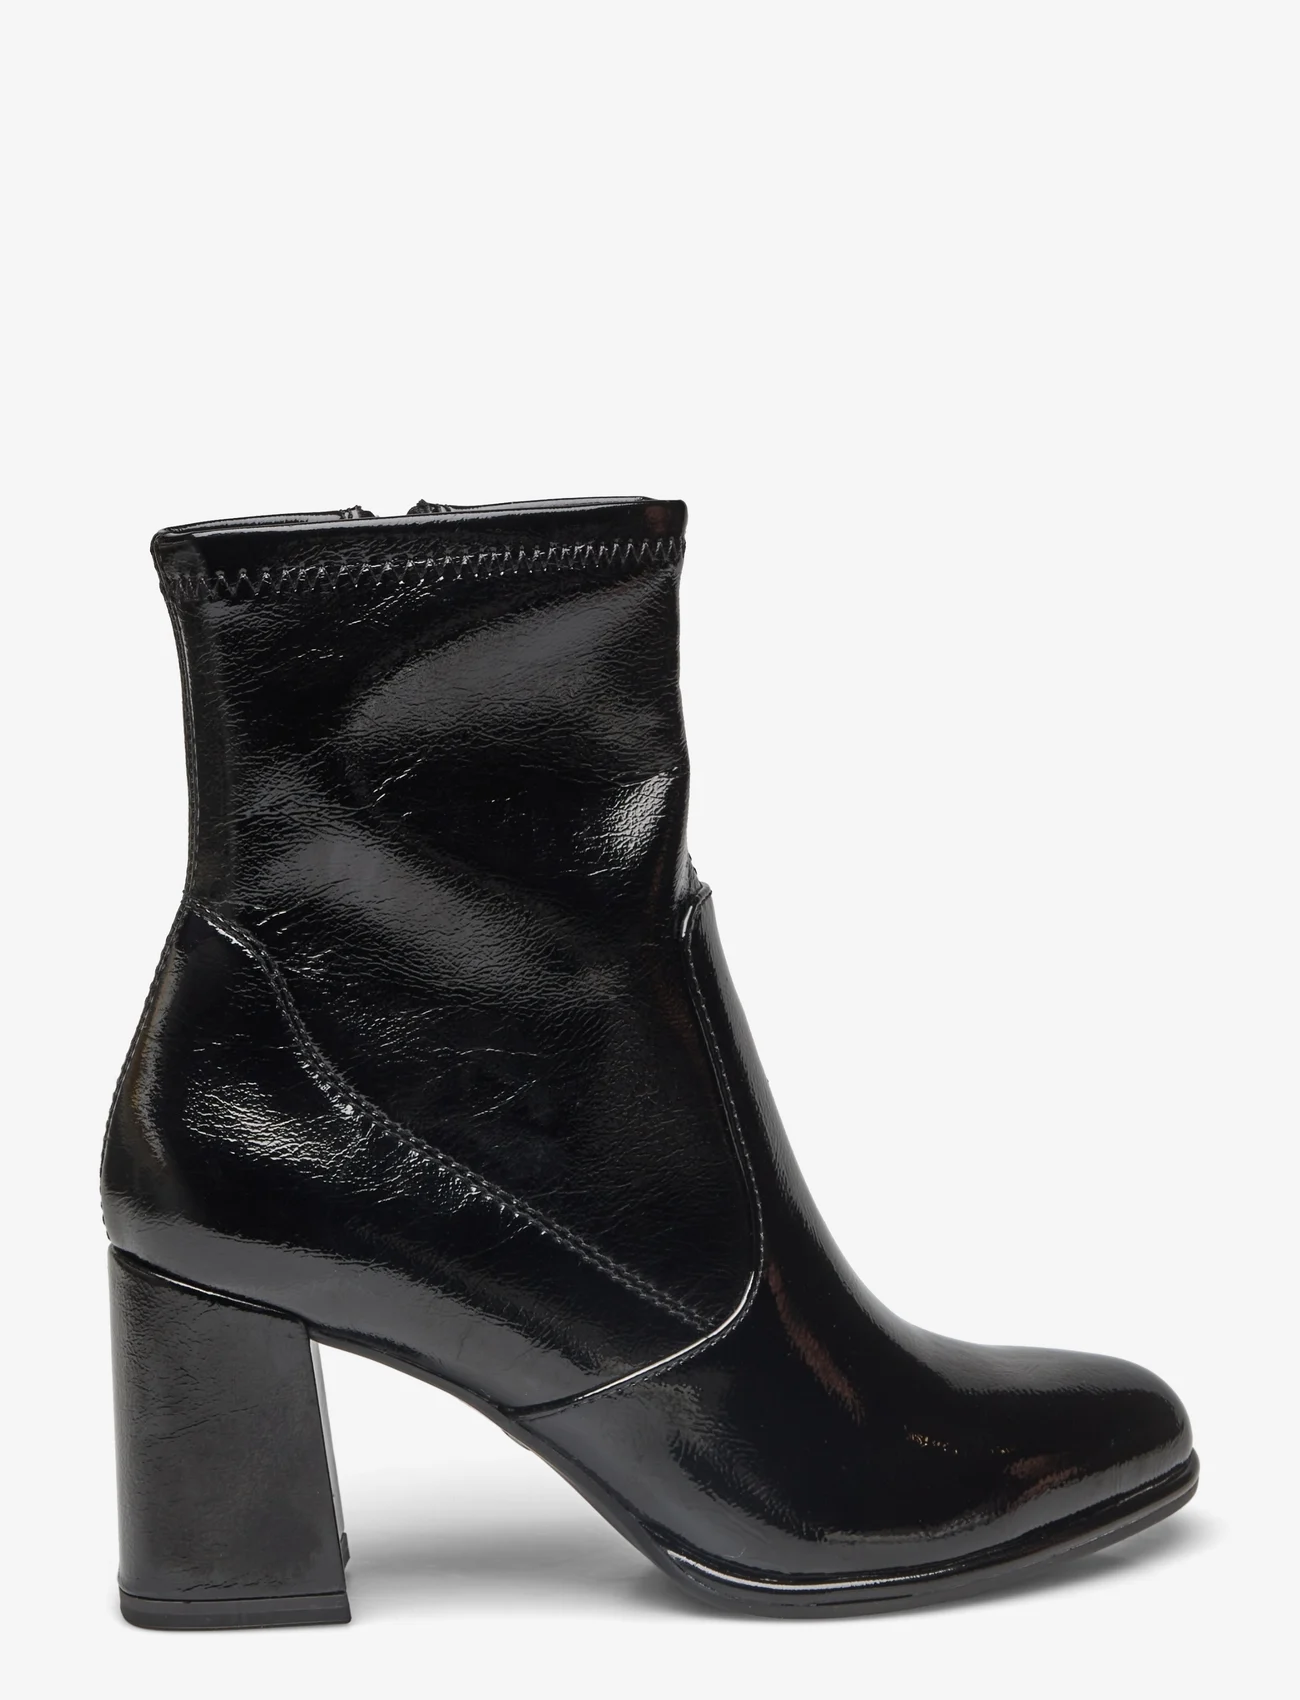 Tamaris - Women Boots - hohe absätze - black patent - 1